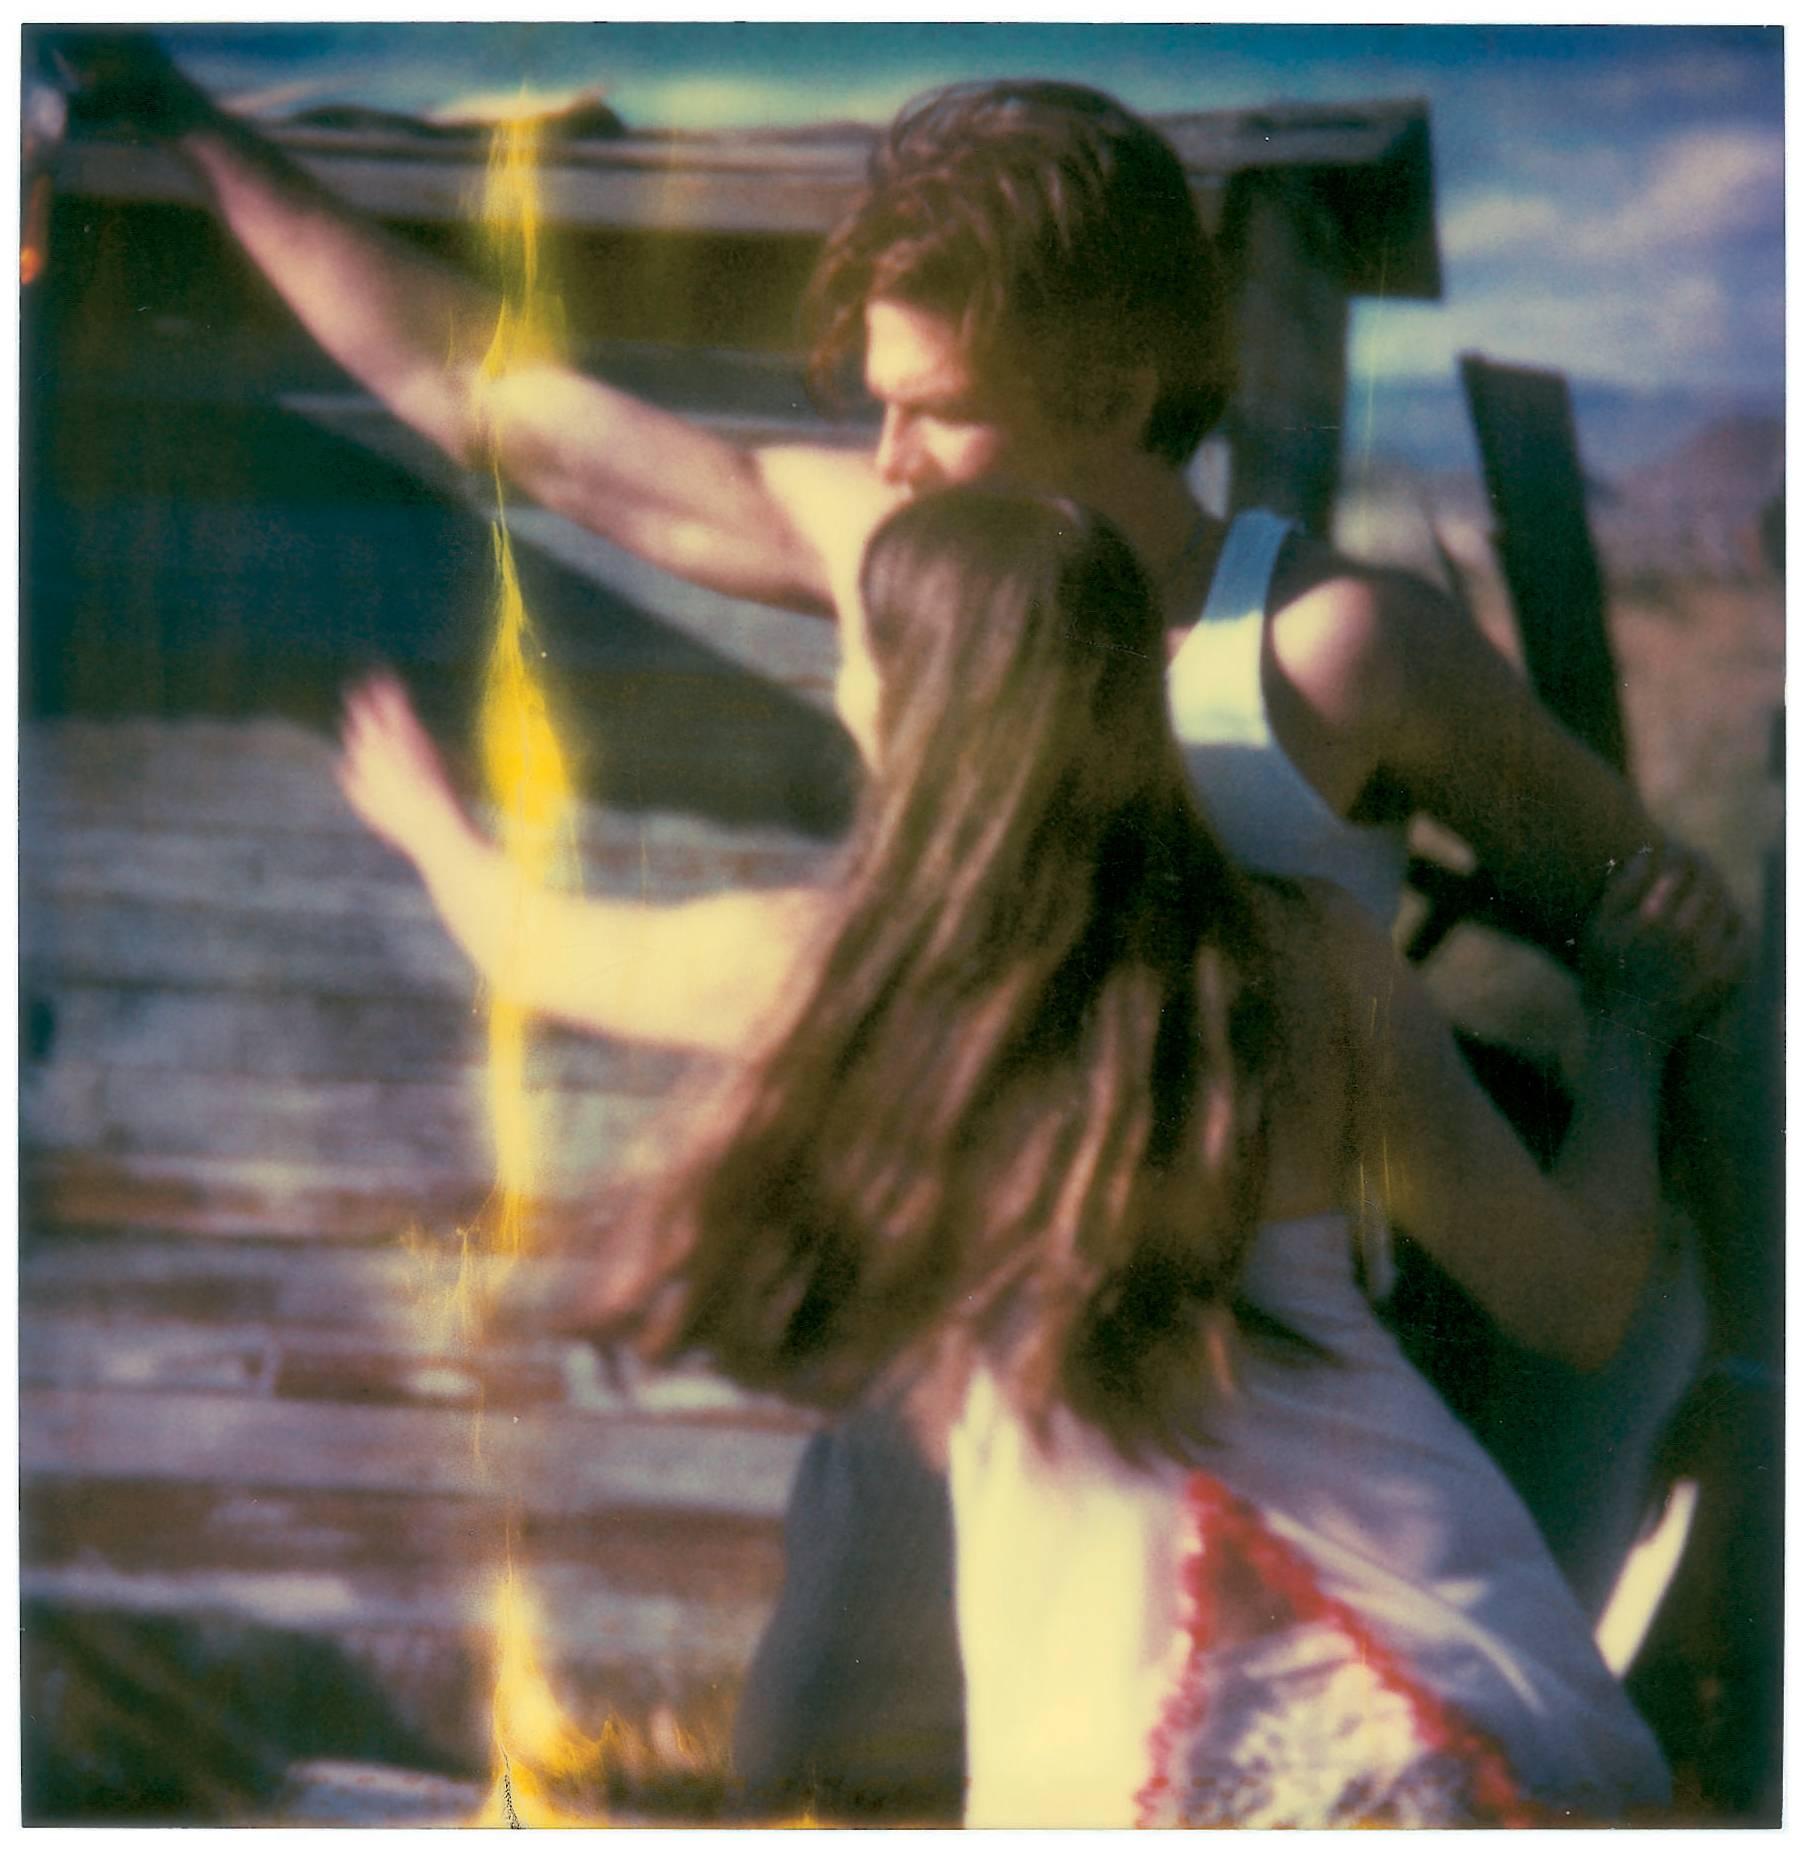 Whisky Dance I - Sidewinder - 8 Pieces basées sur les Polaroids originaux SX-70 - Outsider Art Photograph par Stefanie Schneider